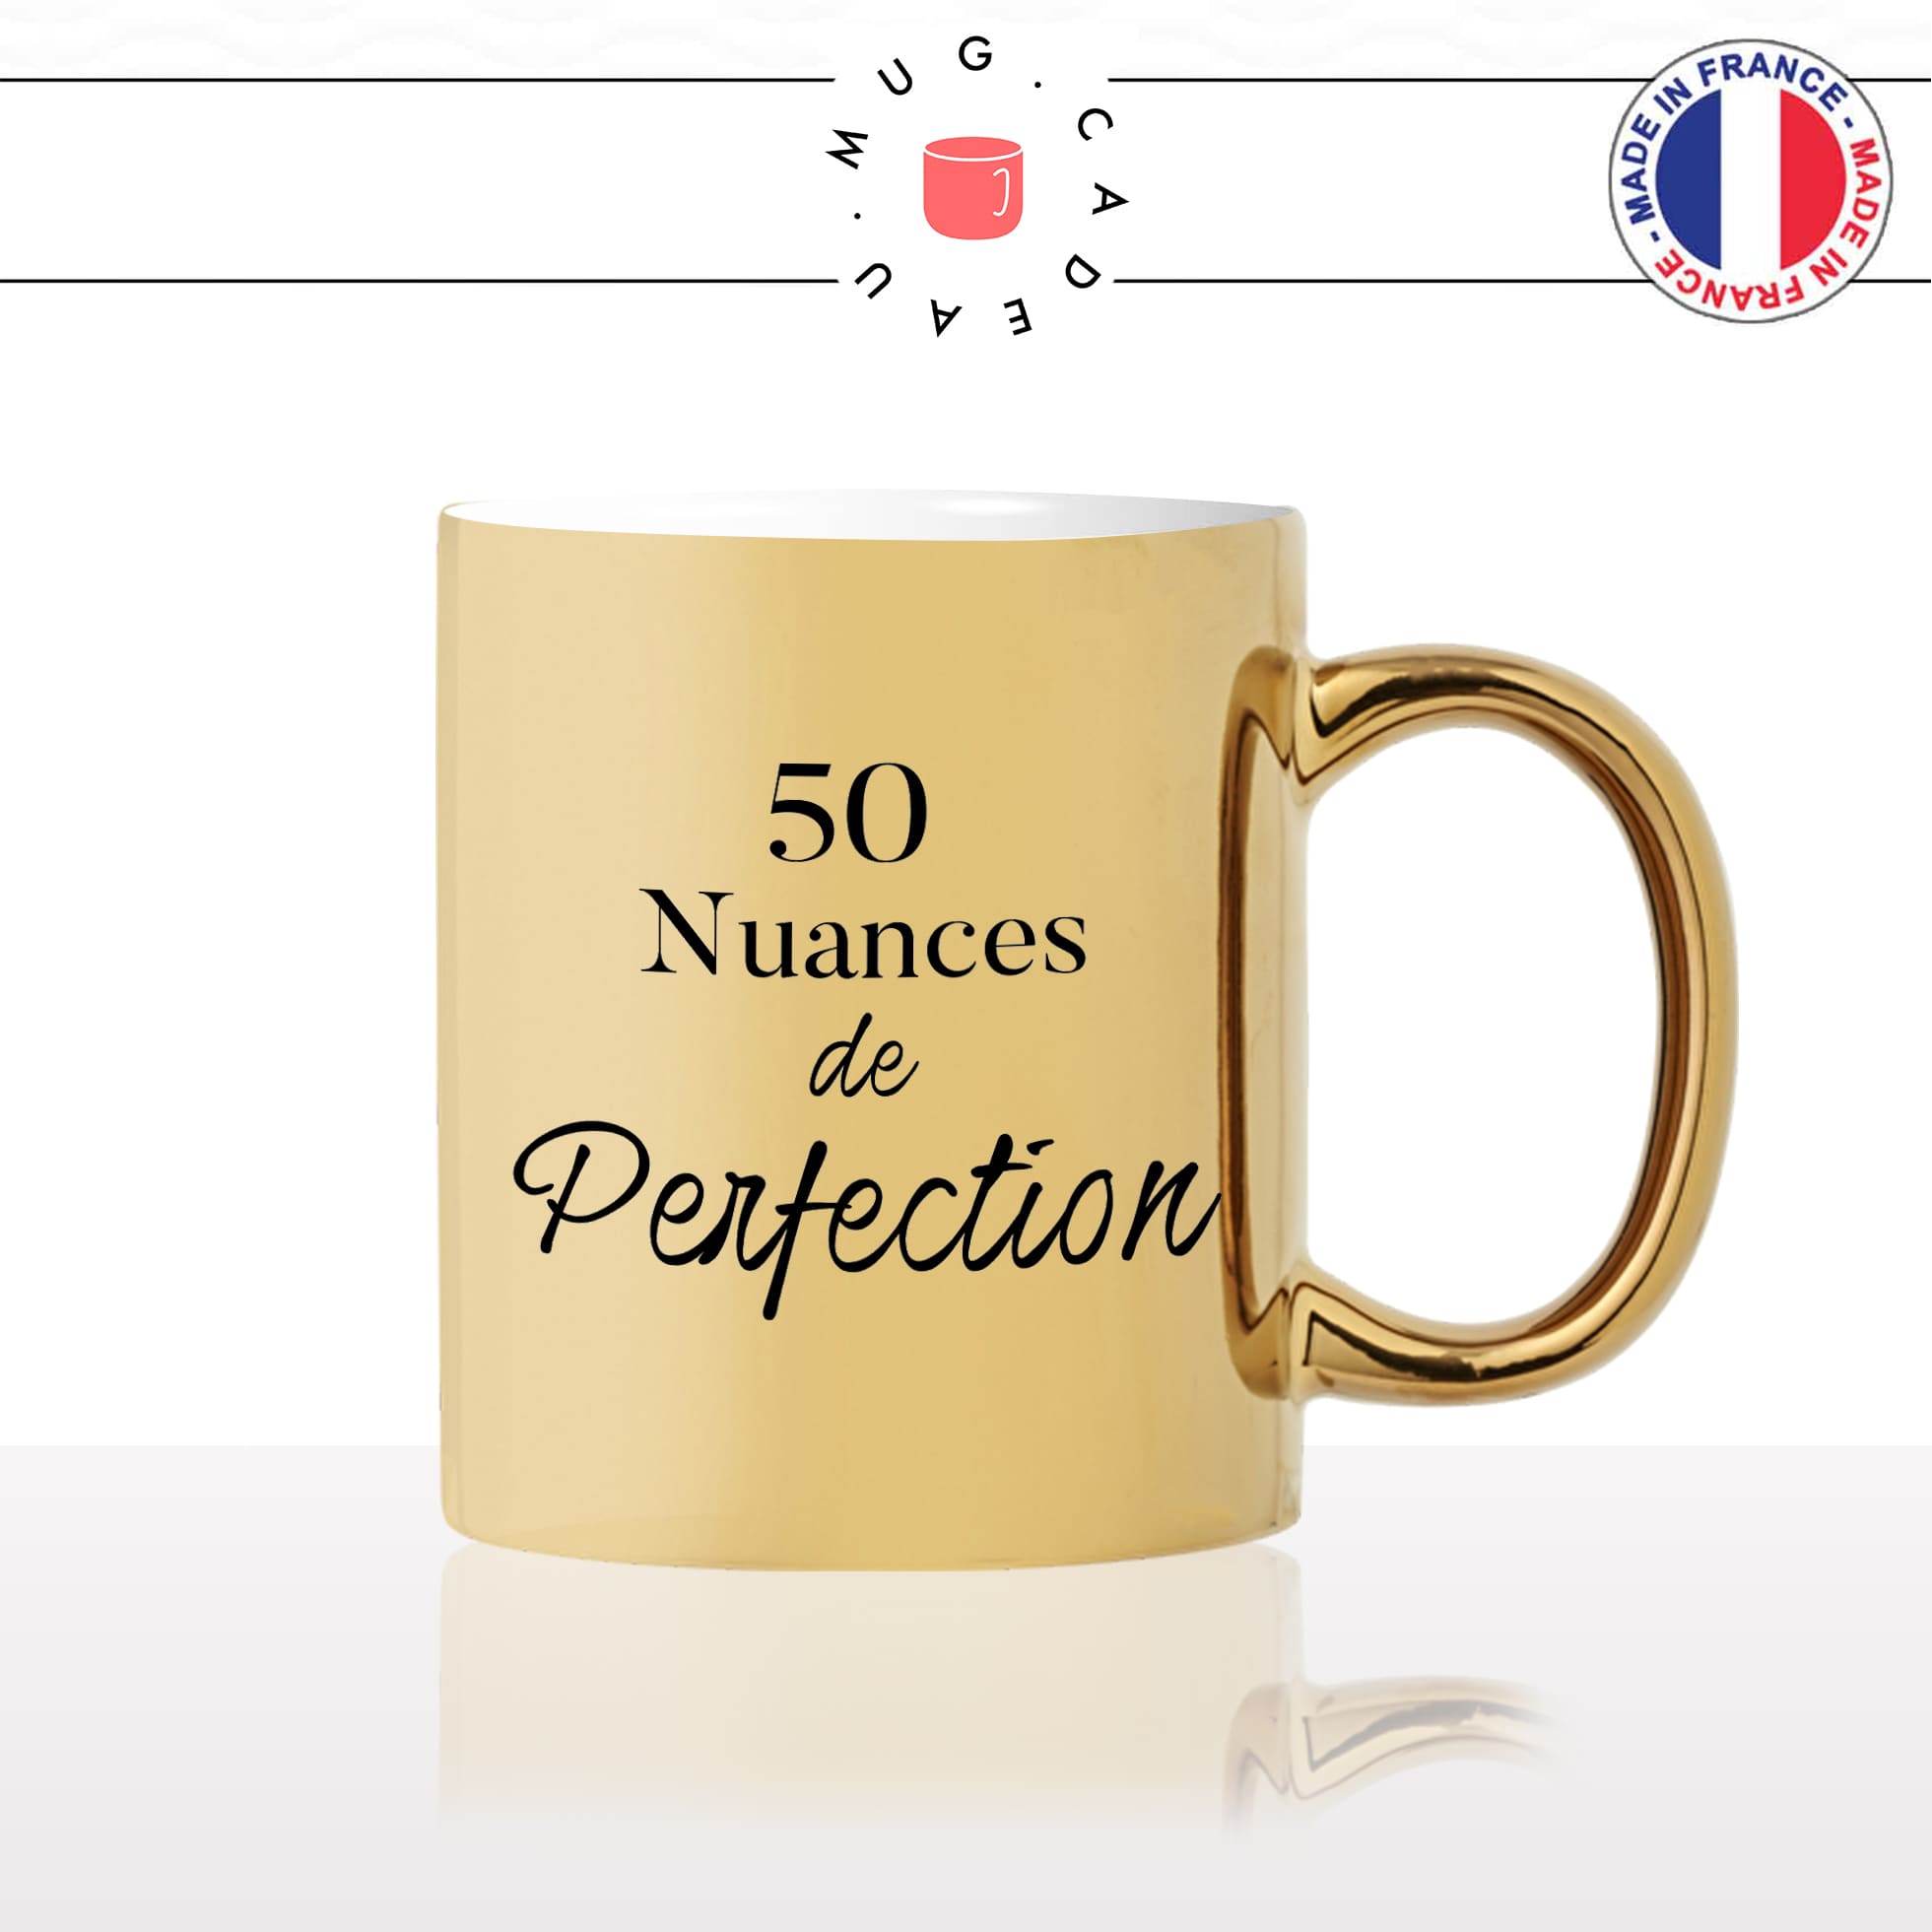 mug-tasse-or-doré-gold-50-nuances-de-grey-perfection-homme-femme-parodie-humour-fun-cool-idée-cadeau-original-personnalisé2